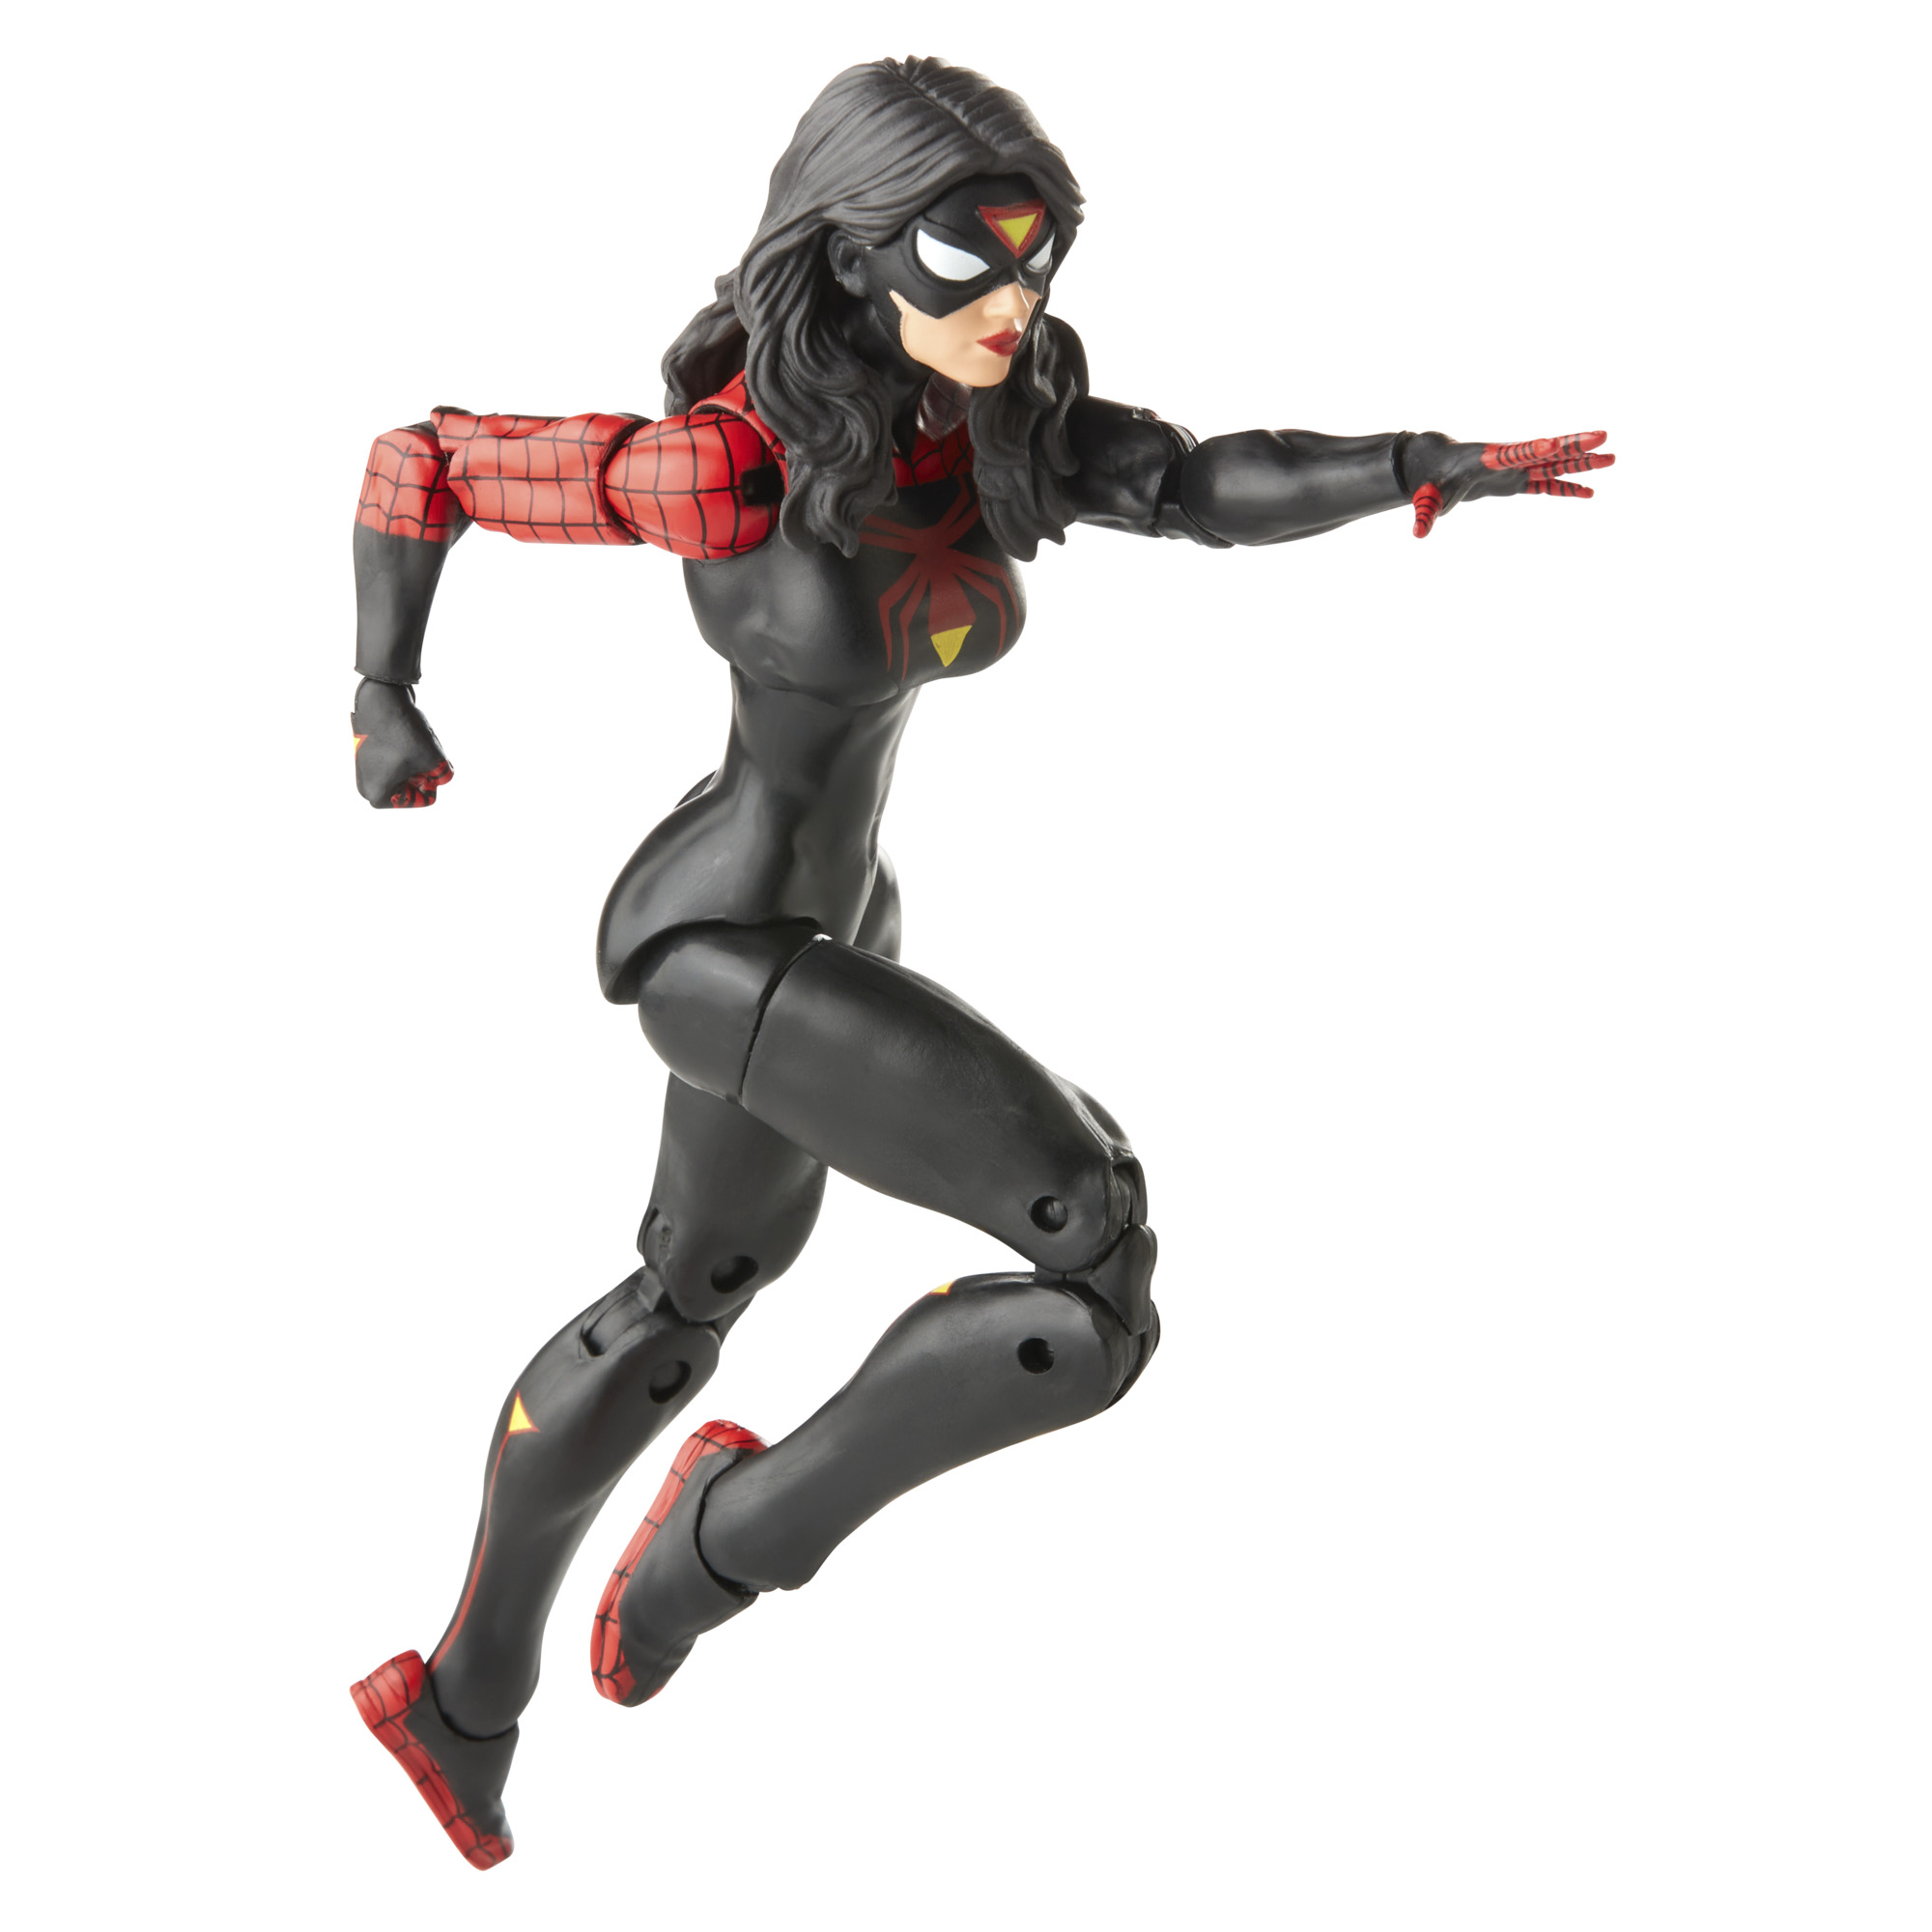 SPIDER-MAN Jessica SpiderWoman Retro Collection Drew Legends Actionfigur Marvel